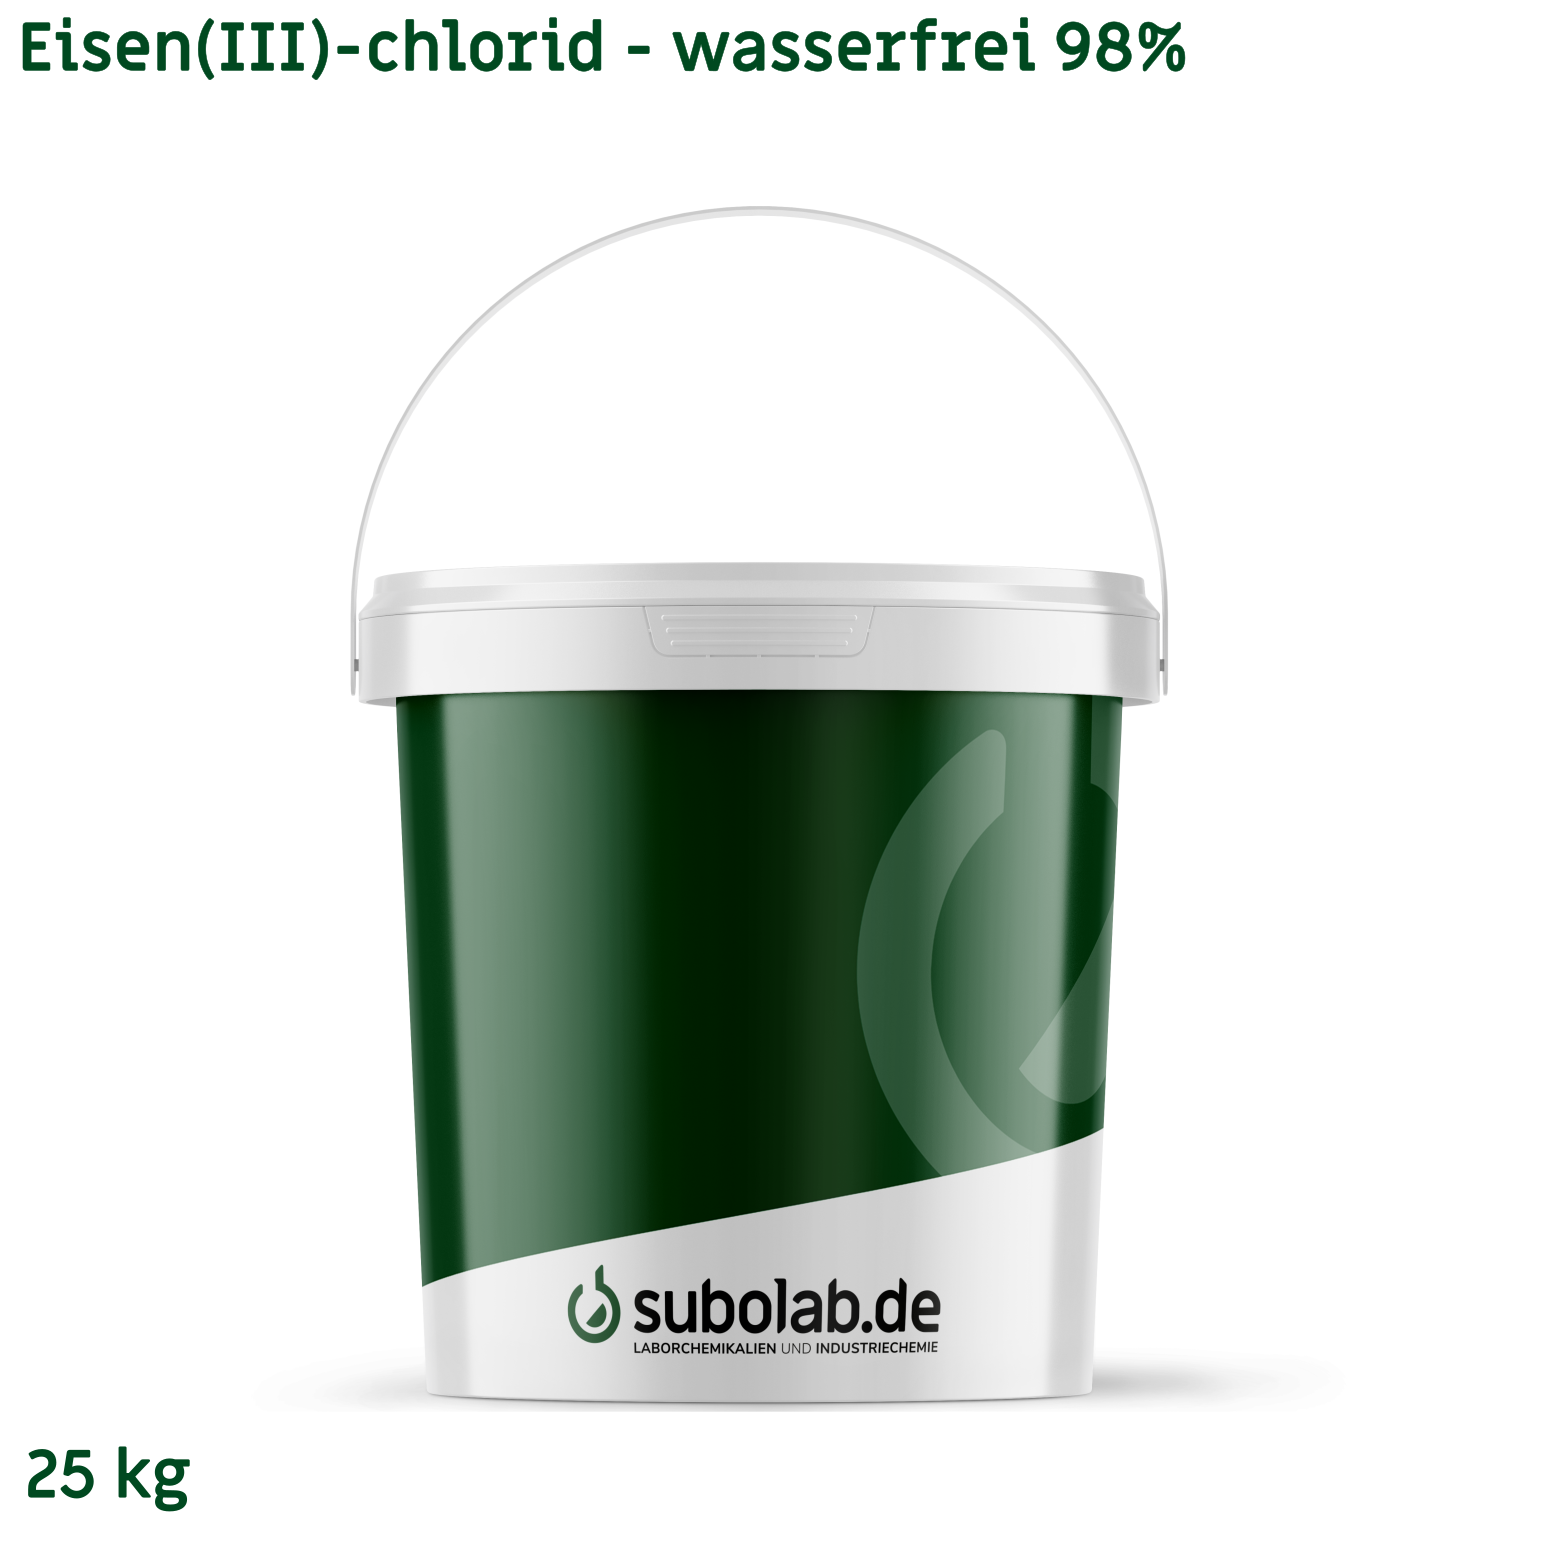 Bild von Eisen(III)-chlorid - wasserfrei 98% (25 kg)